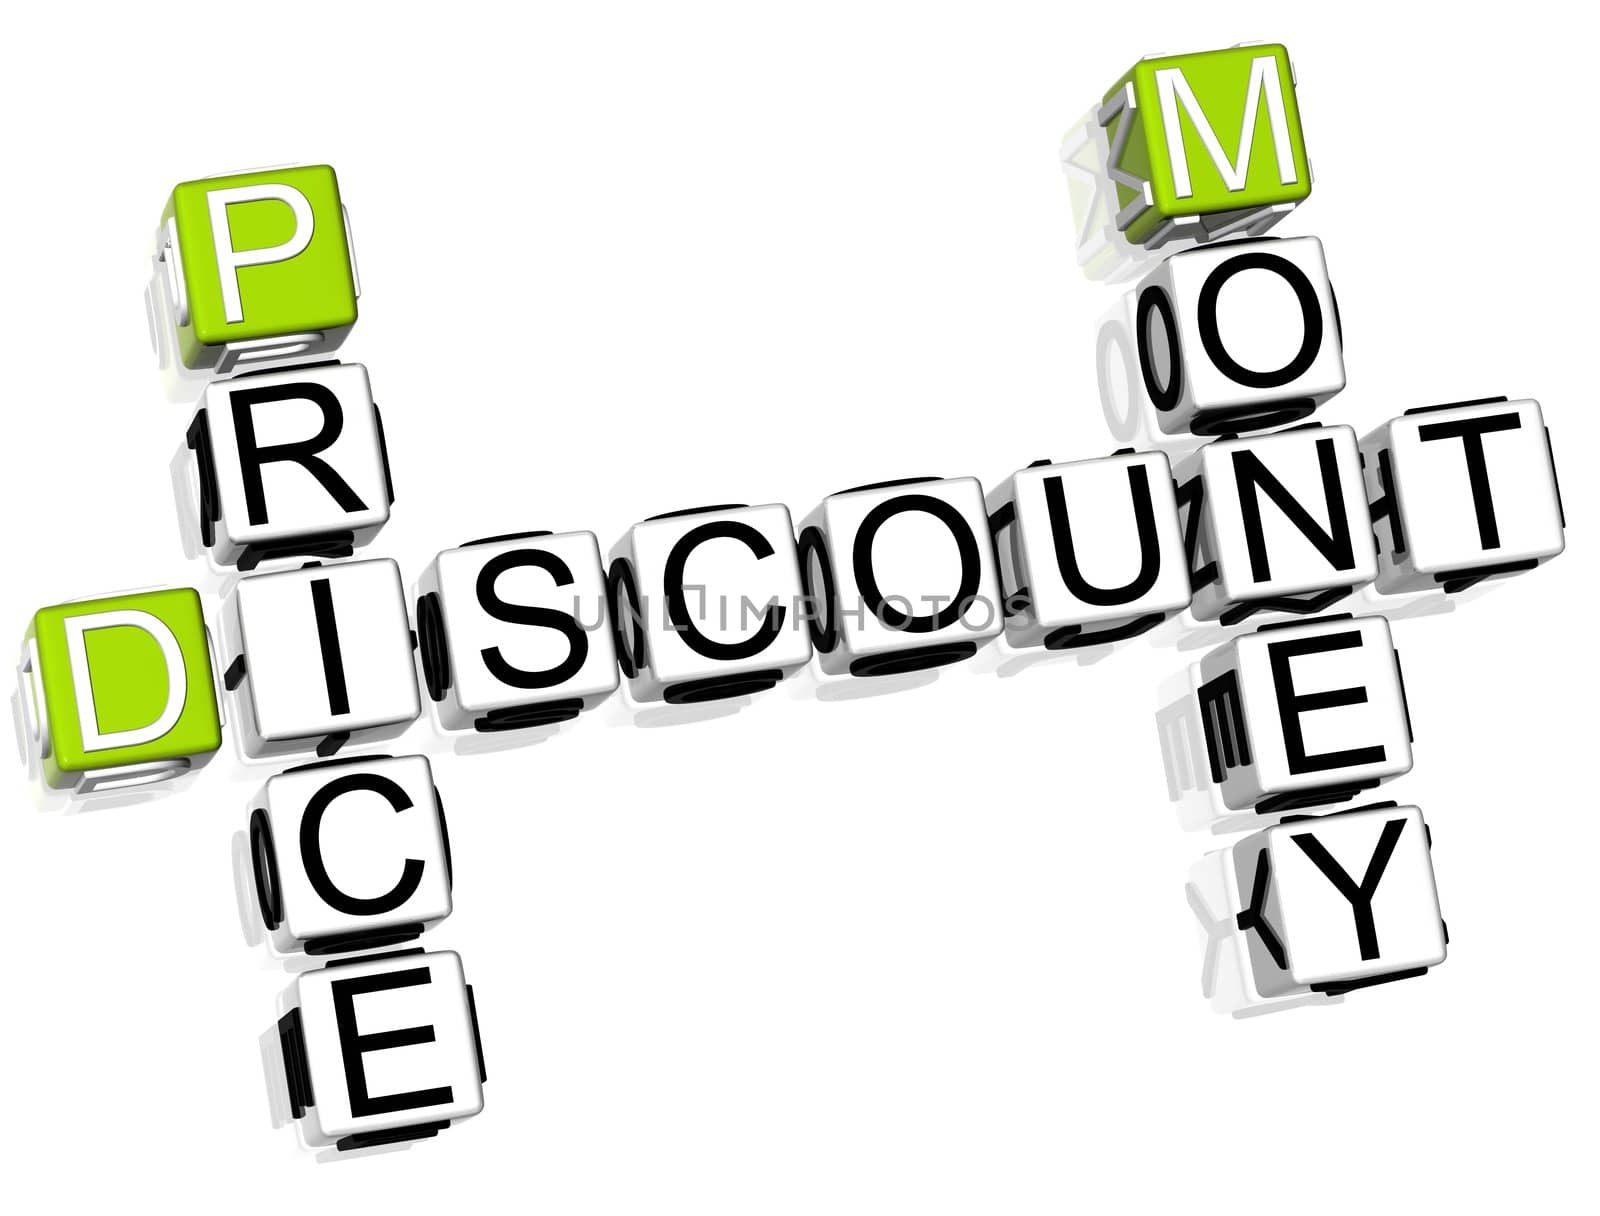 Discount Price Money Crossword by mariusz_prusaczyk